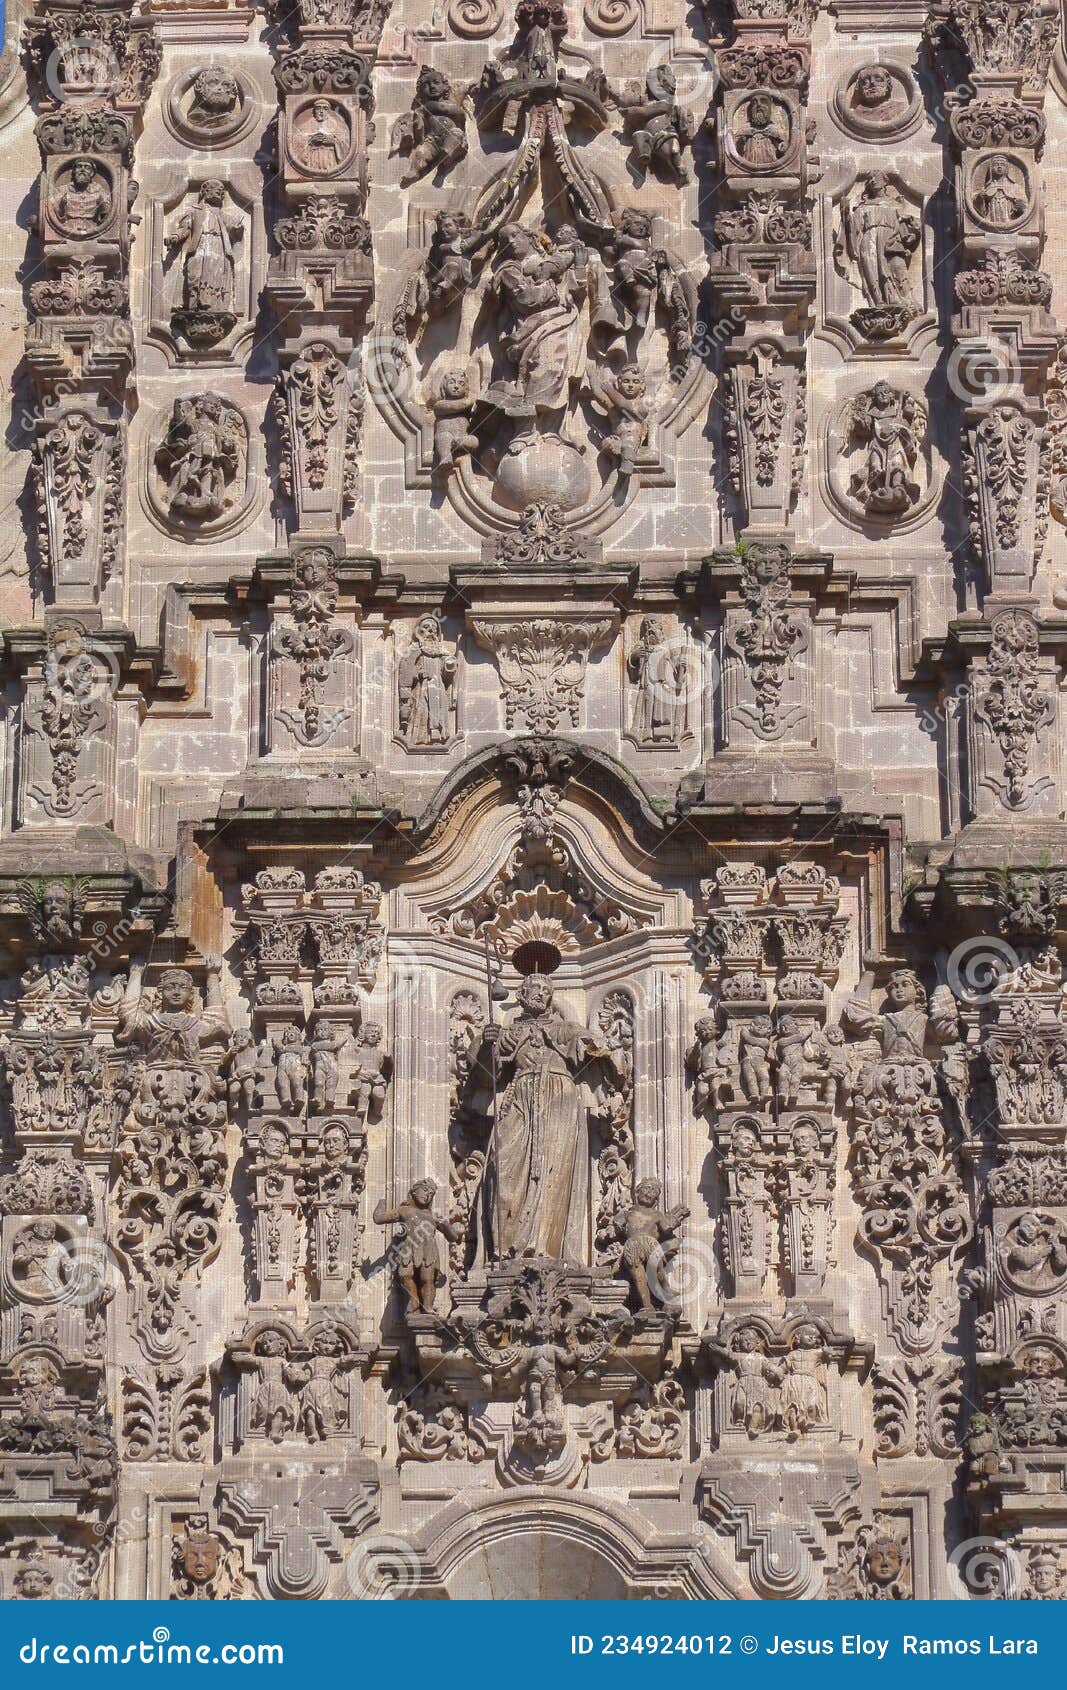 tepotzotlan cathedral in mexico xvii